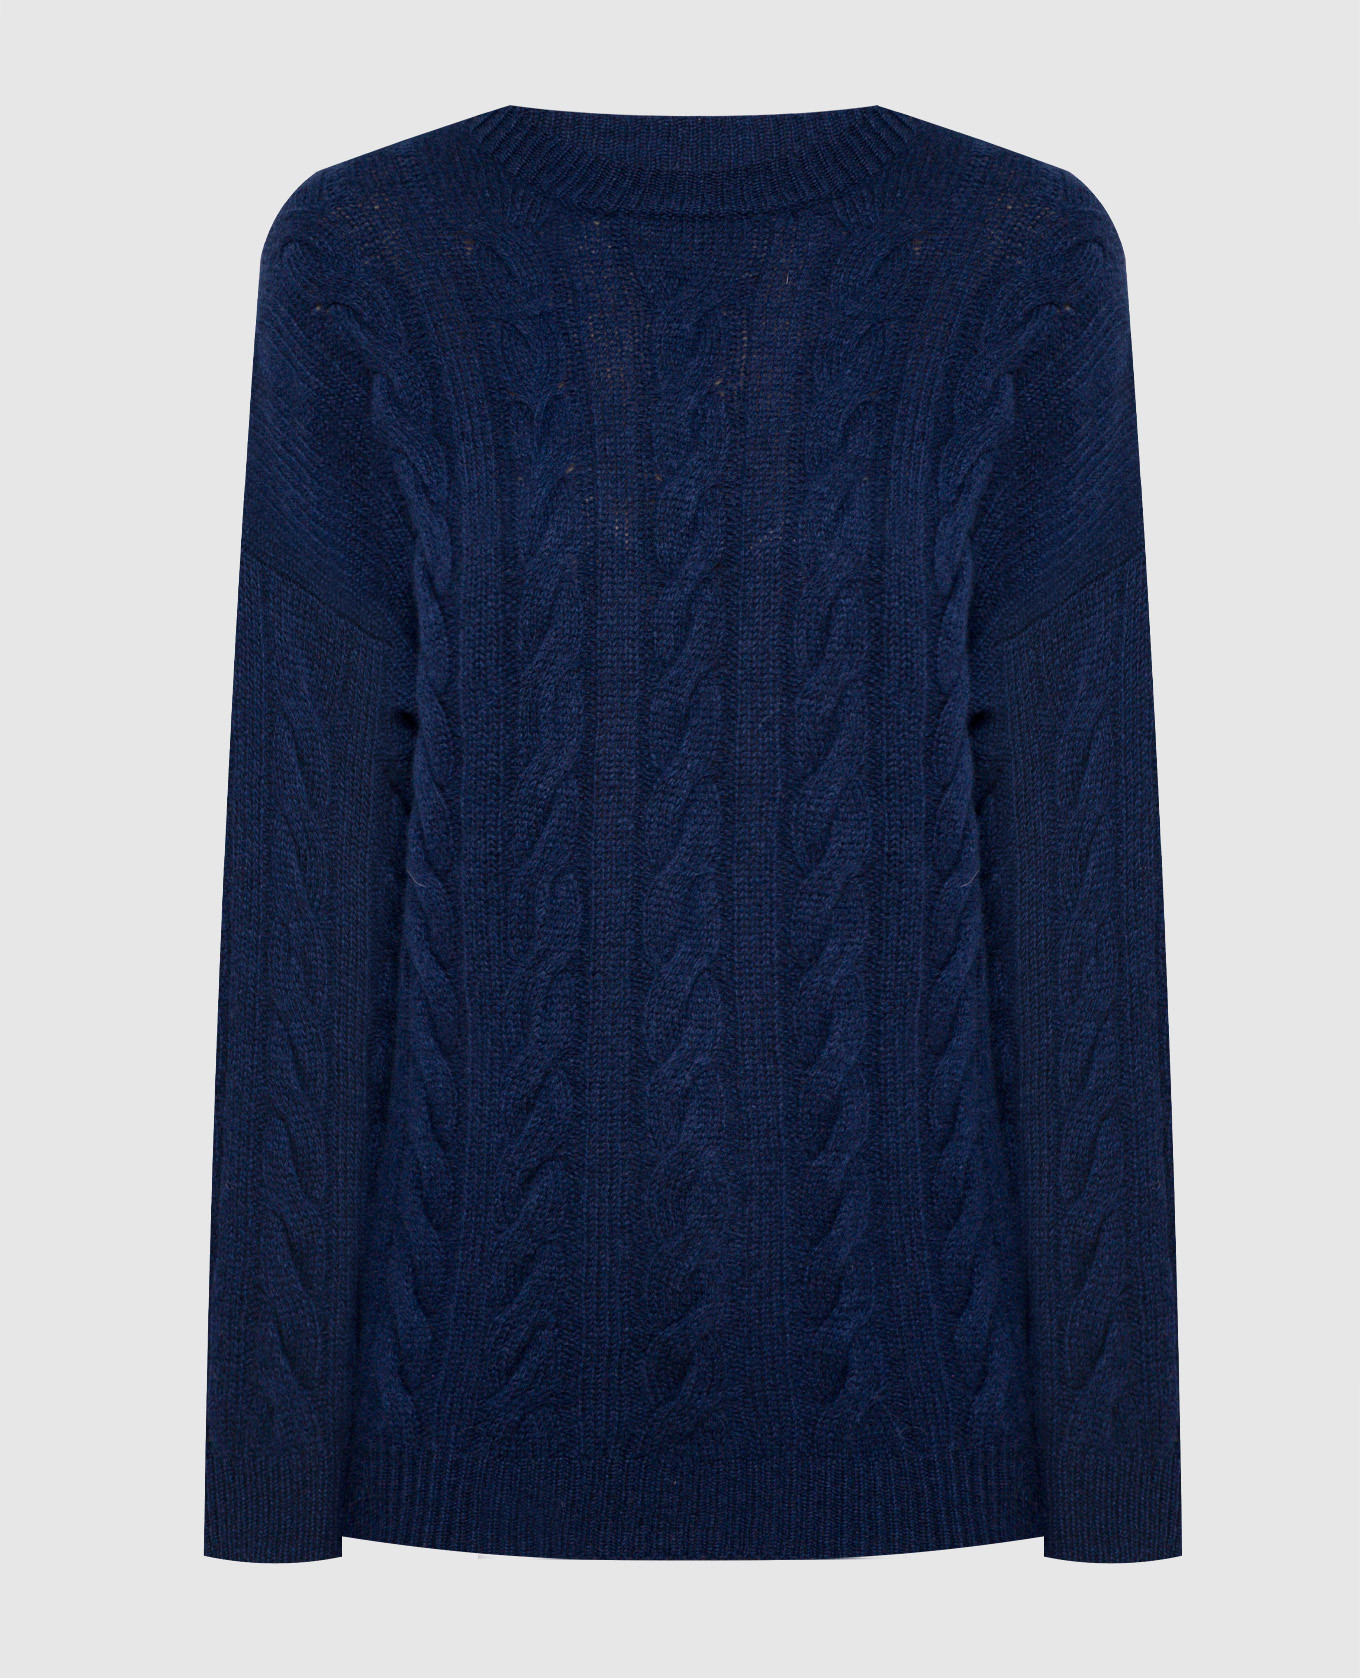 Синий свитер из шерсти и кашемира в фактурный узор.